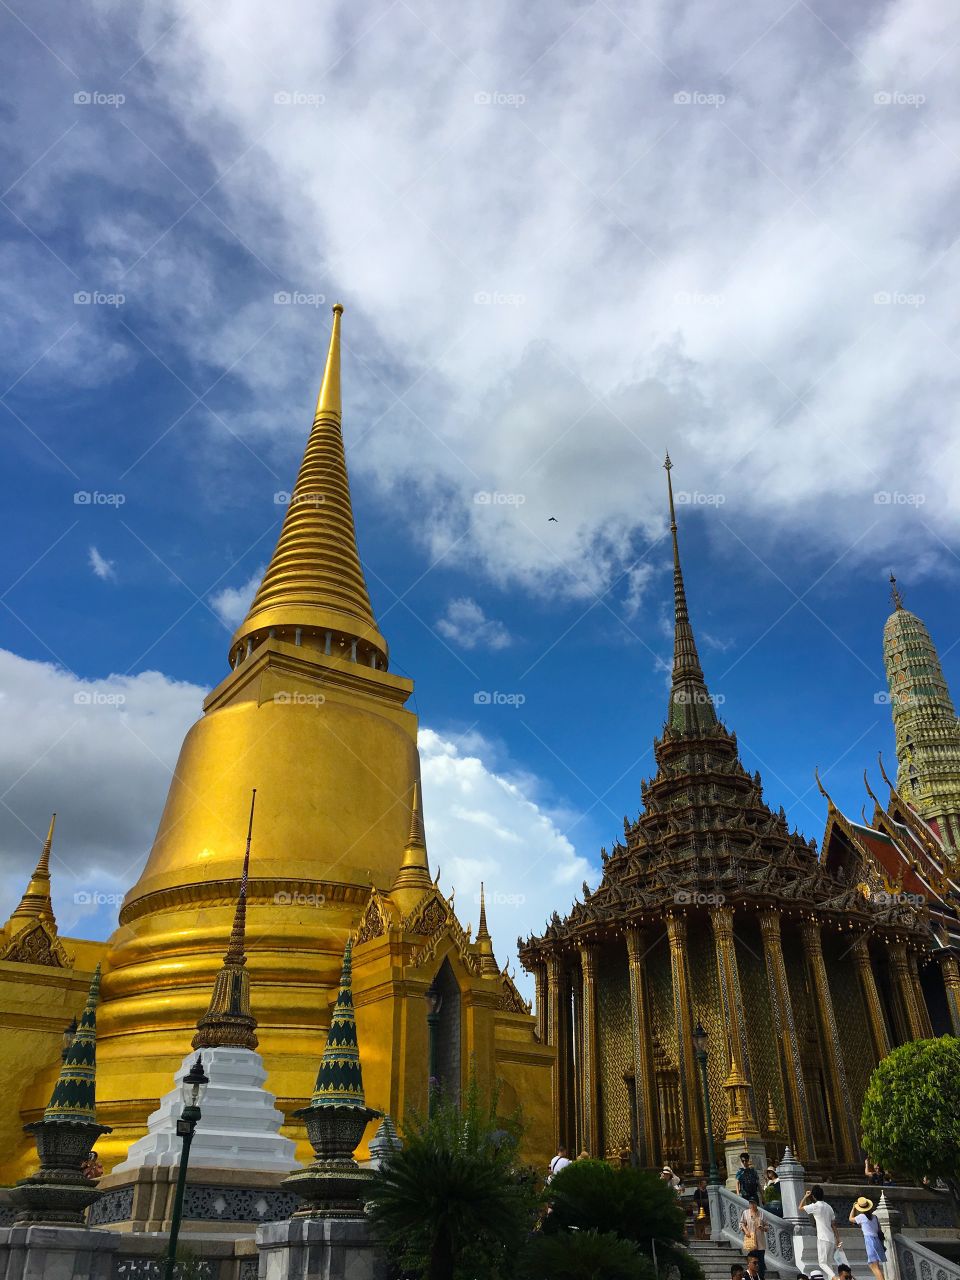 Grand Palace / Bangkok Thailand 7